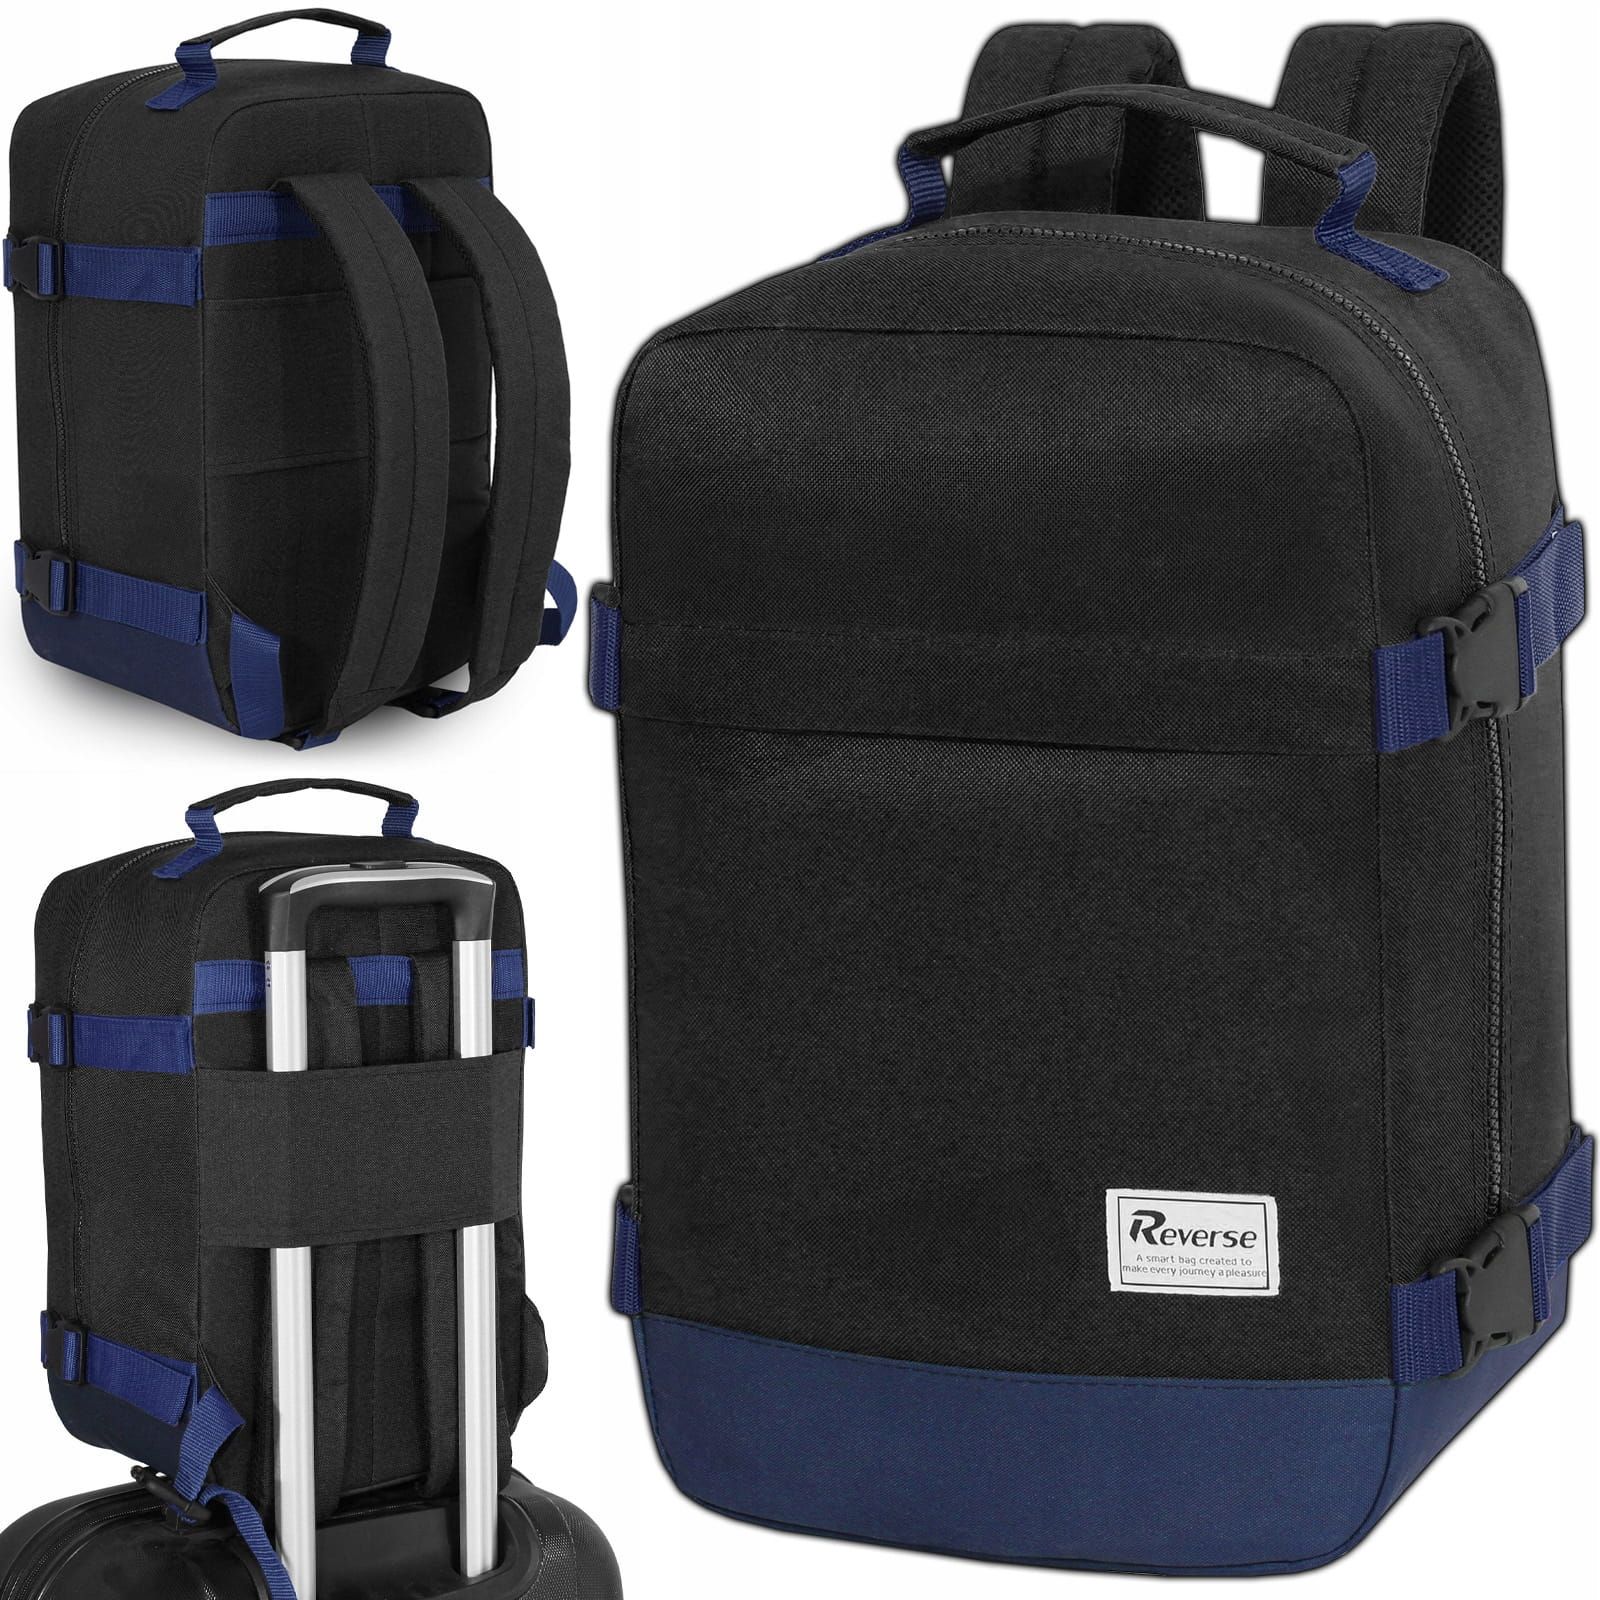 Reverse Příruční zavazadlo - batoh pro RYANAIR 2069 40x25x20 BLACK